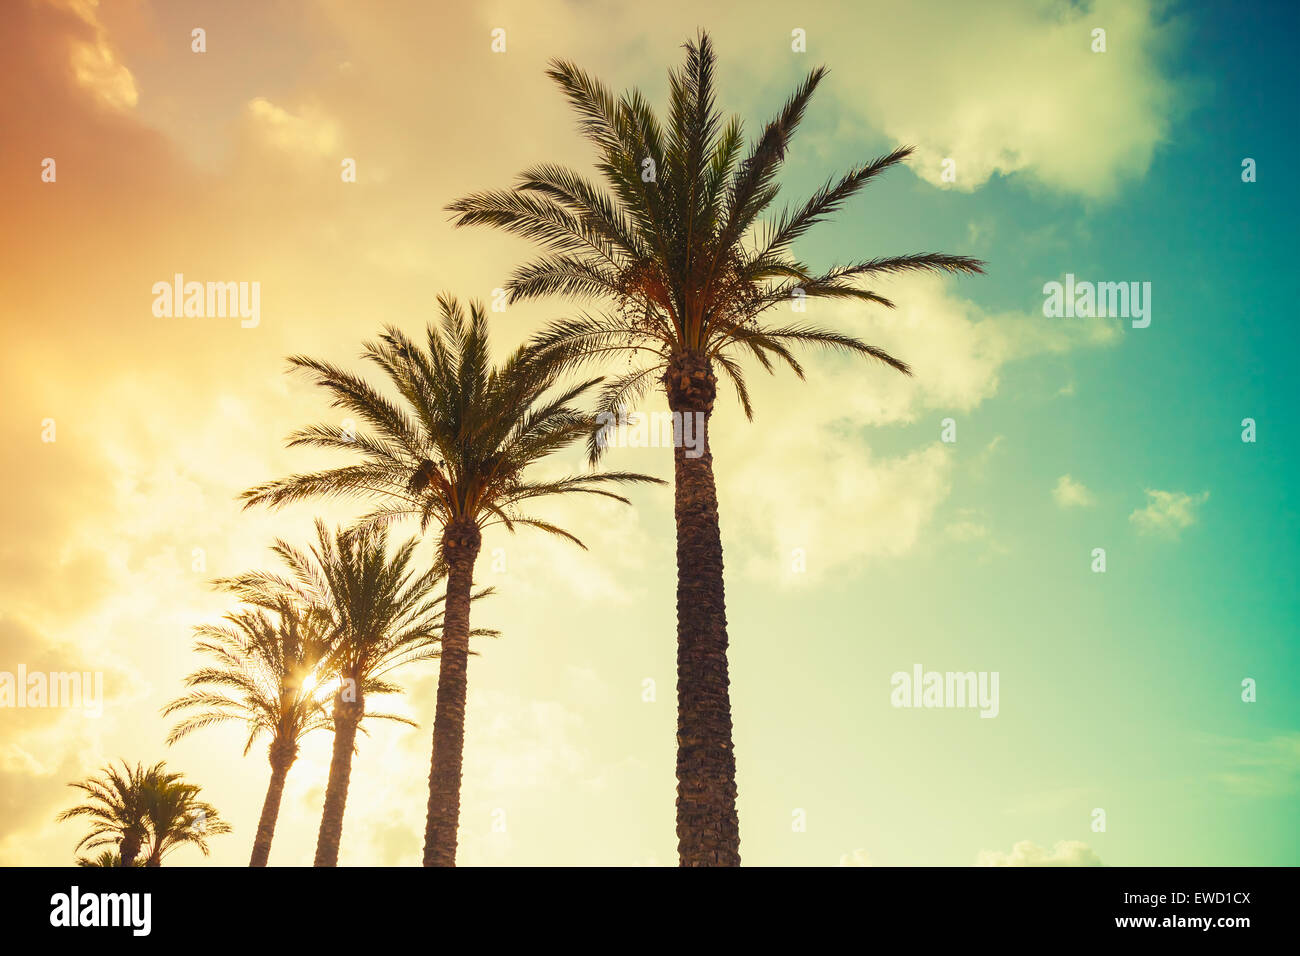 Palmen und strahlende Sonne über bewölktem Himmelshintergrund. Vintage-Stil. Foto mit bunten getönten gradient Instagram-Filter-Effekt Stockfoto